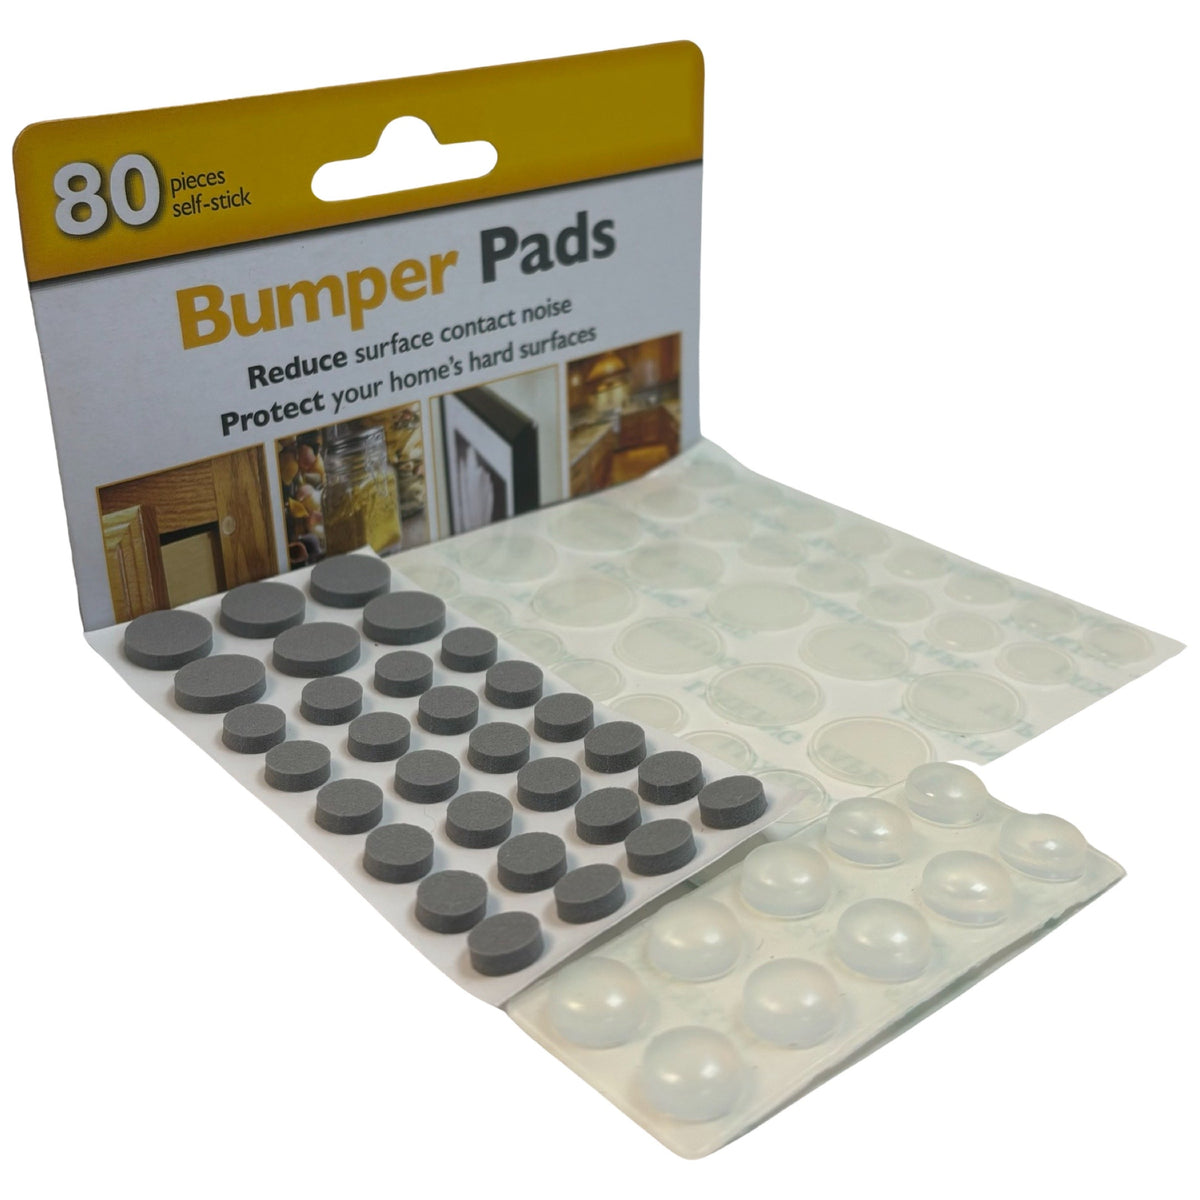 80pc Assorted Door Bumper Pads, Rubber & Felt Feet -Sound Dampening